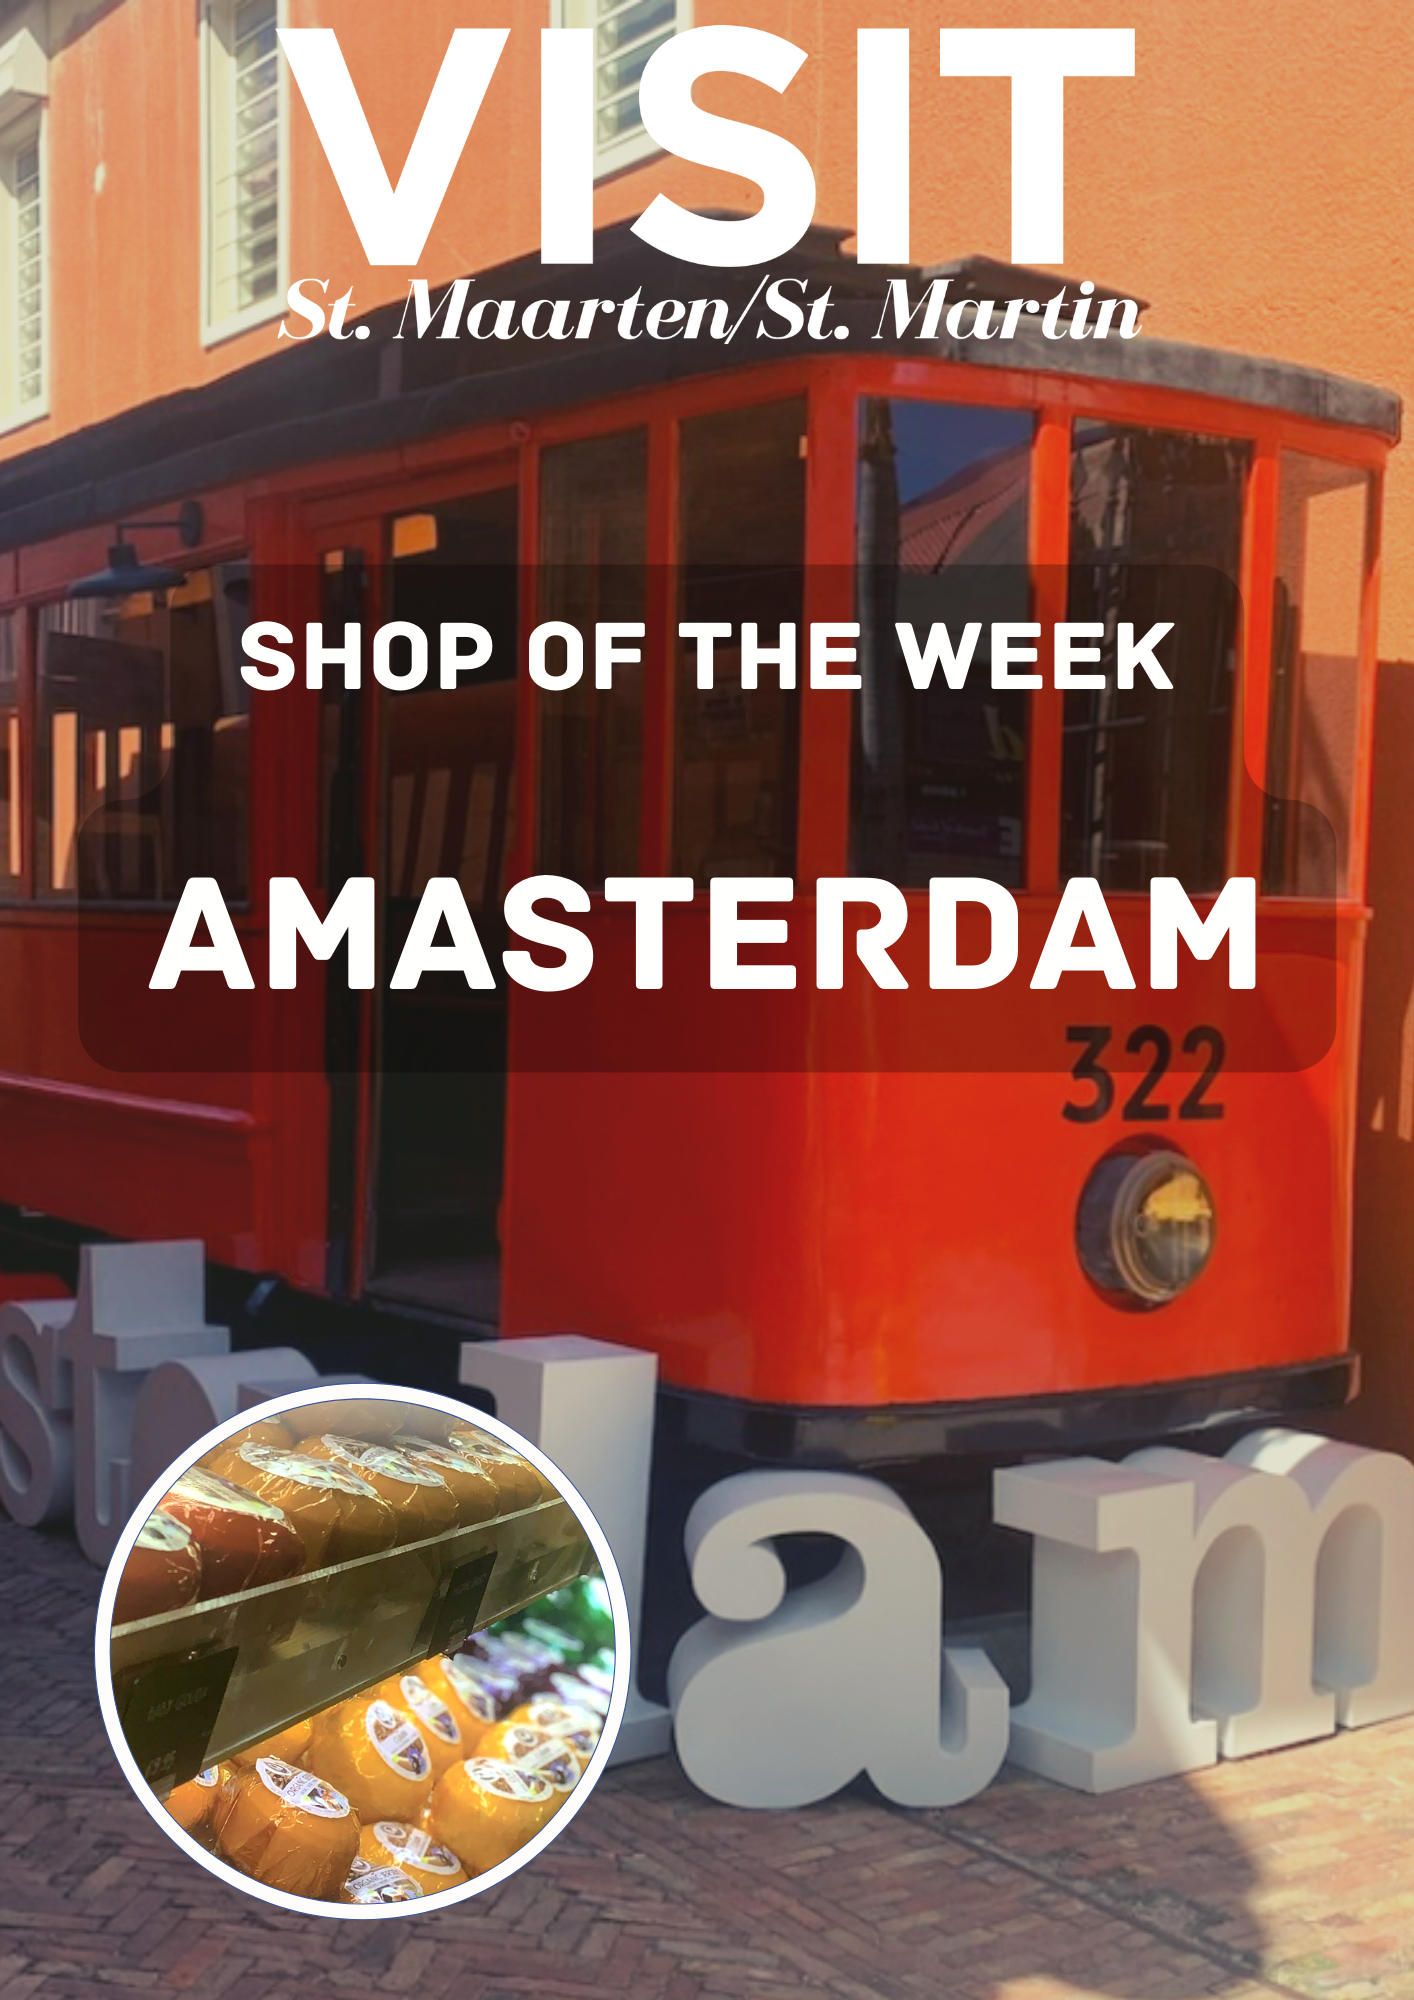 AMAsterdam, Philipsburg, St Maarten, Cruise Port, Cheese store